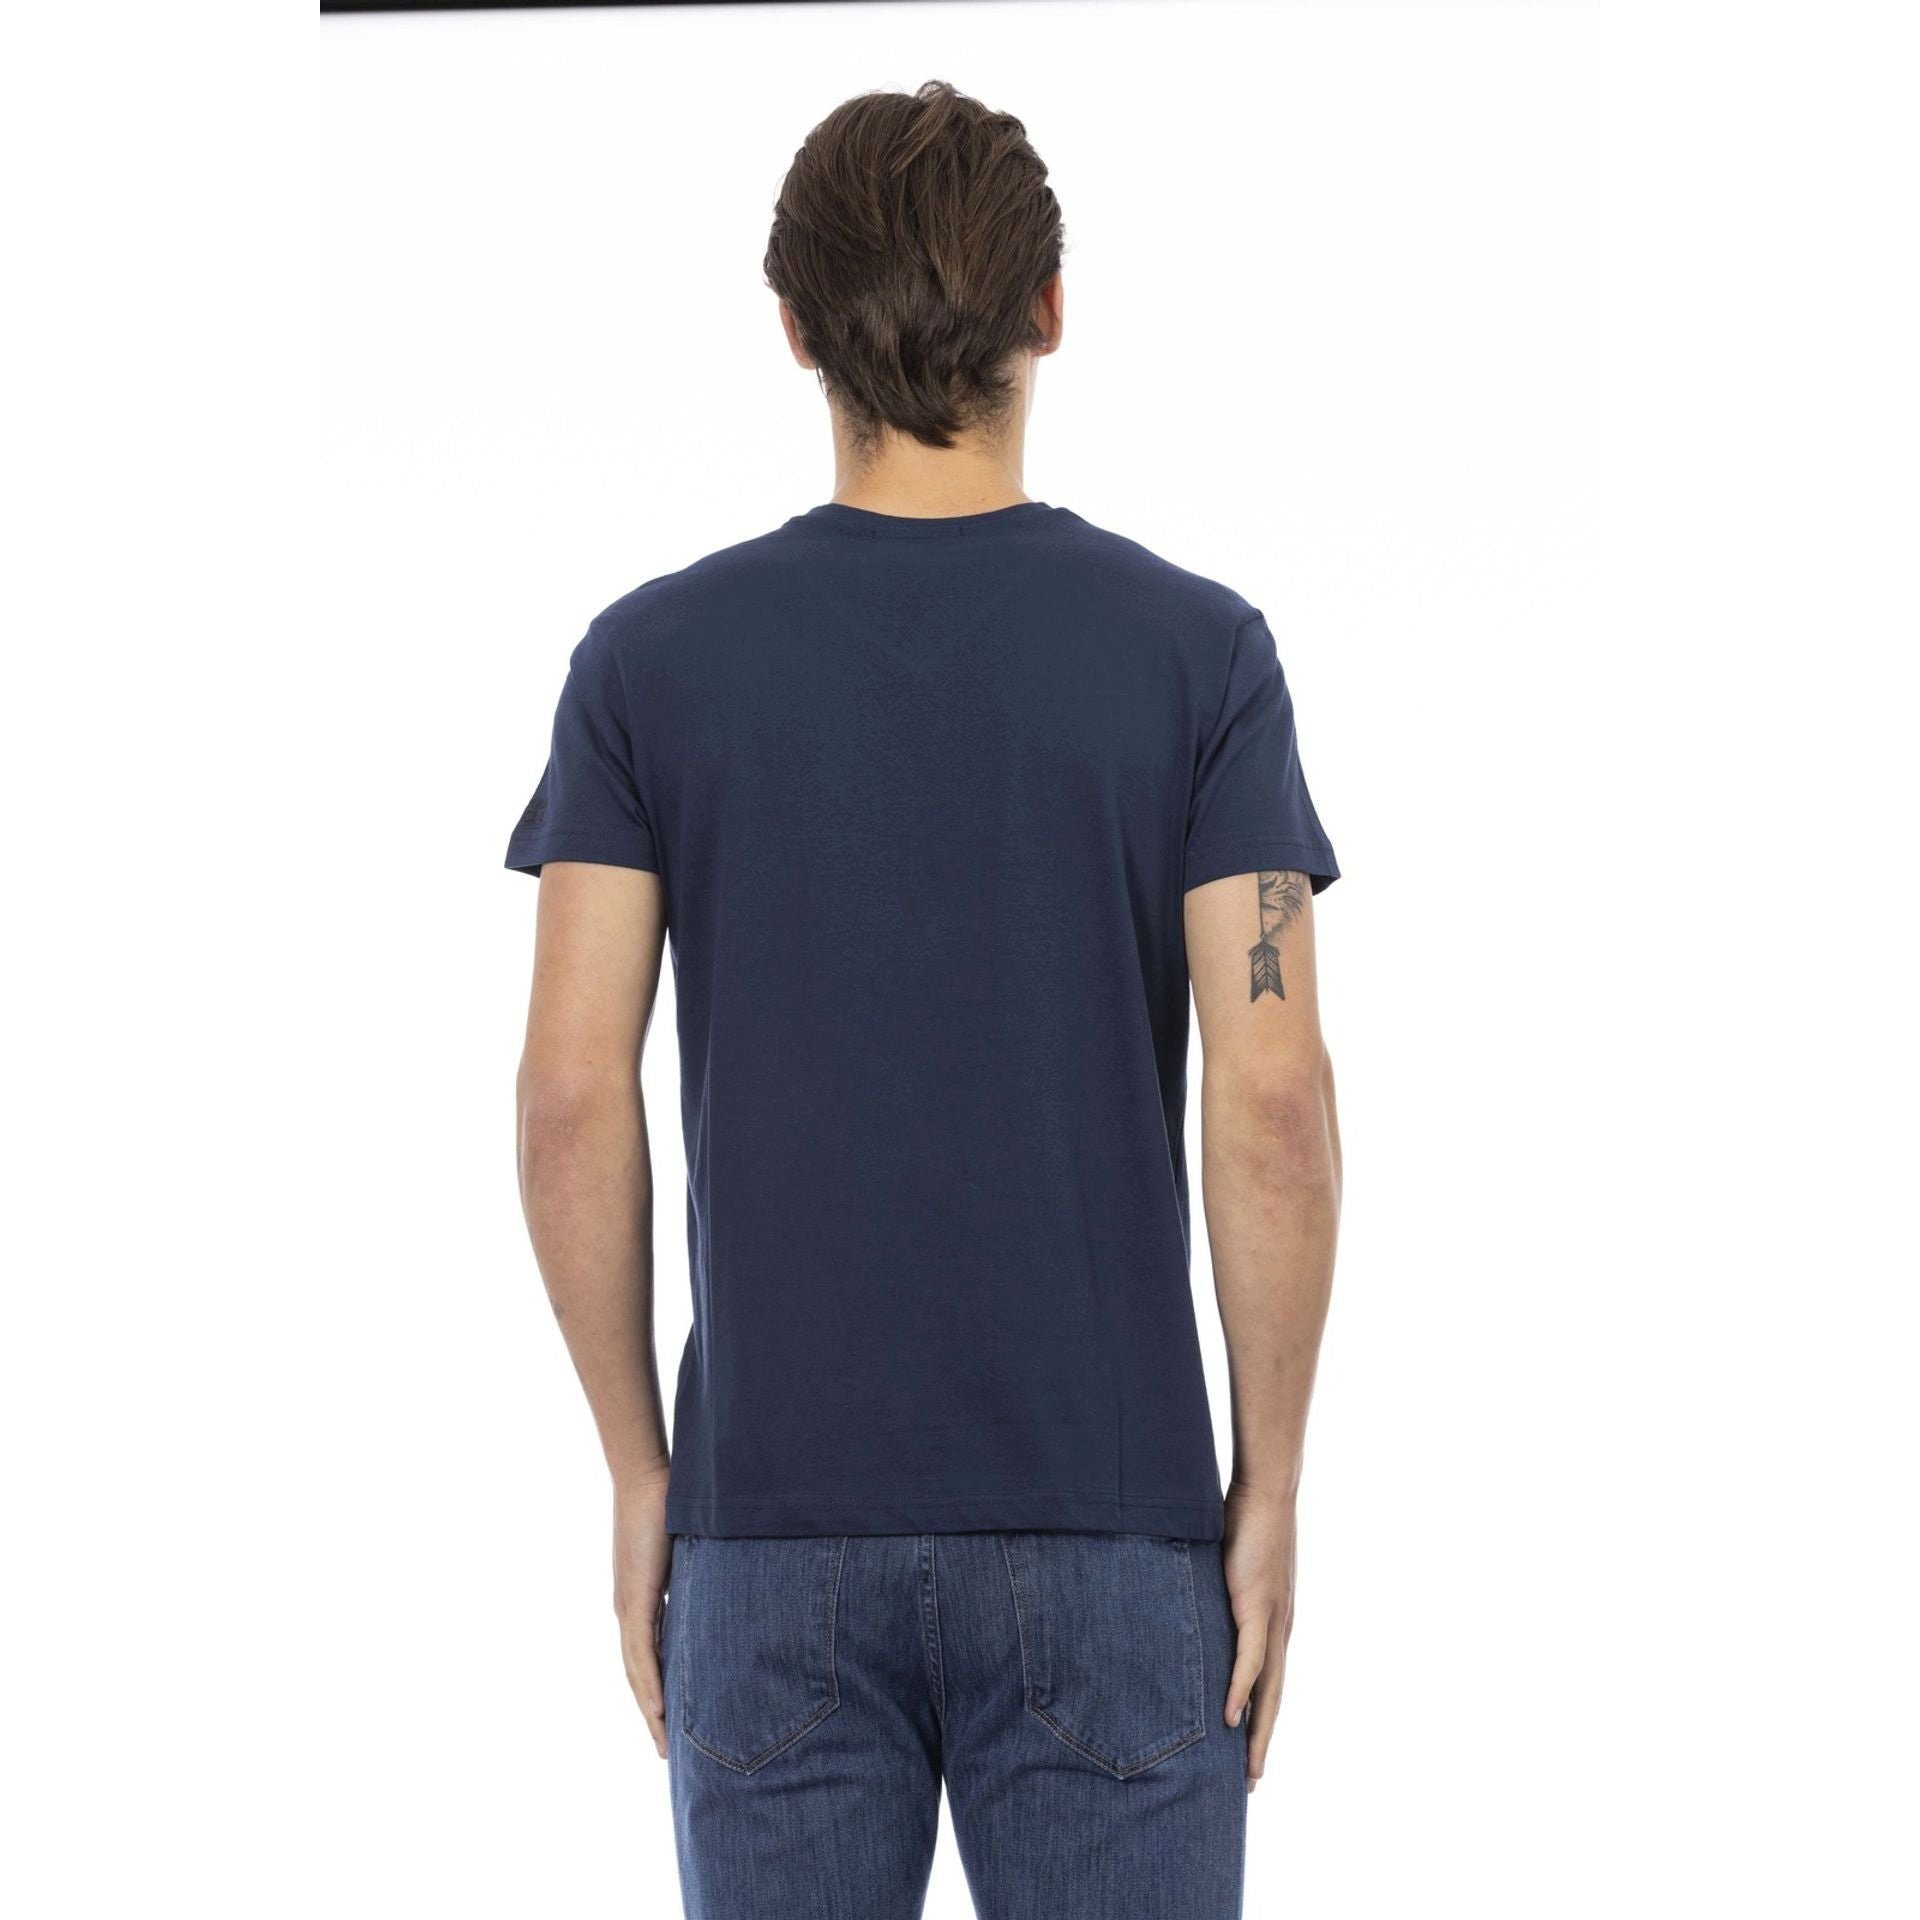 verleiht aus, aber Blau Note Action stilvolle das subtile, durch sich Trussardi Es zeichnet T-Shirts, eine T-Shirt Logo-Muster das Trussardi